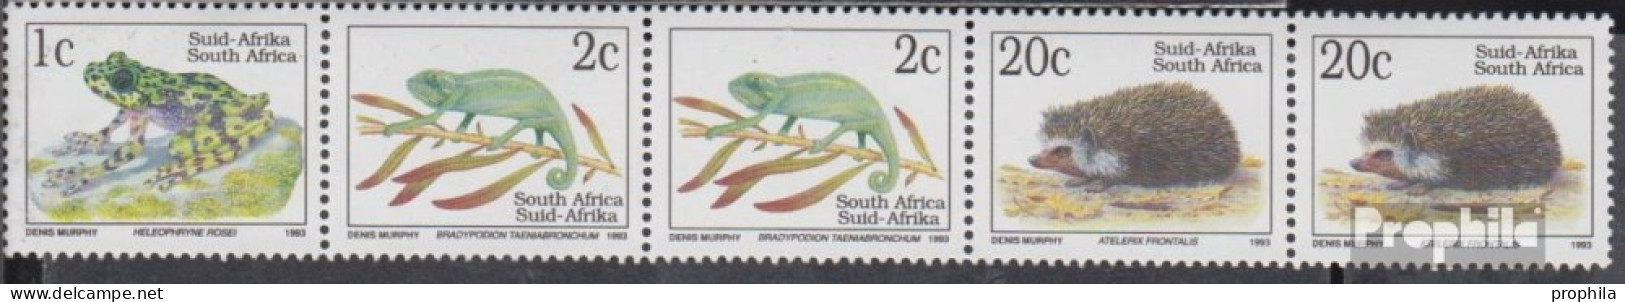 Südafrika WZ2 Postfrisch 1993 Bedrohte Tiere - Ungebraucht